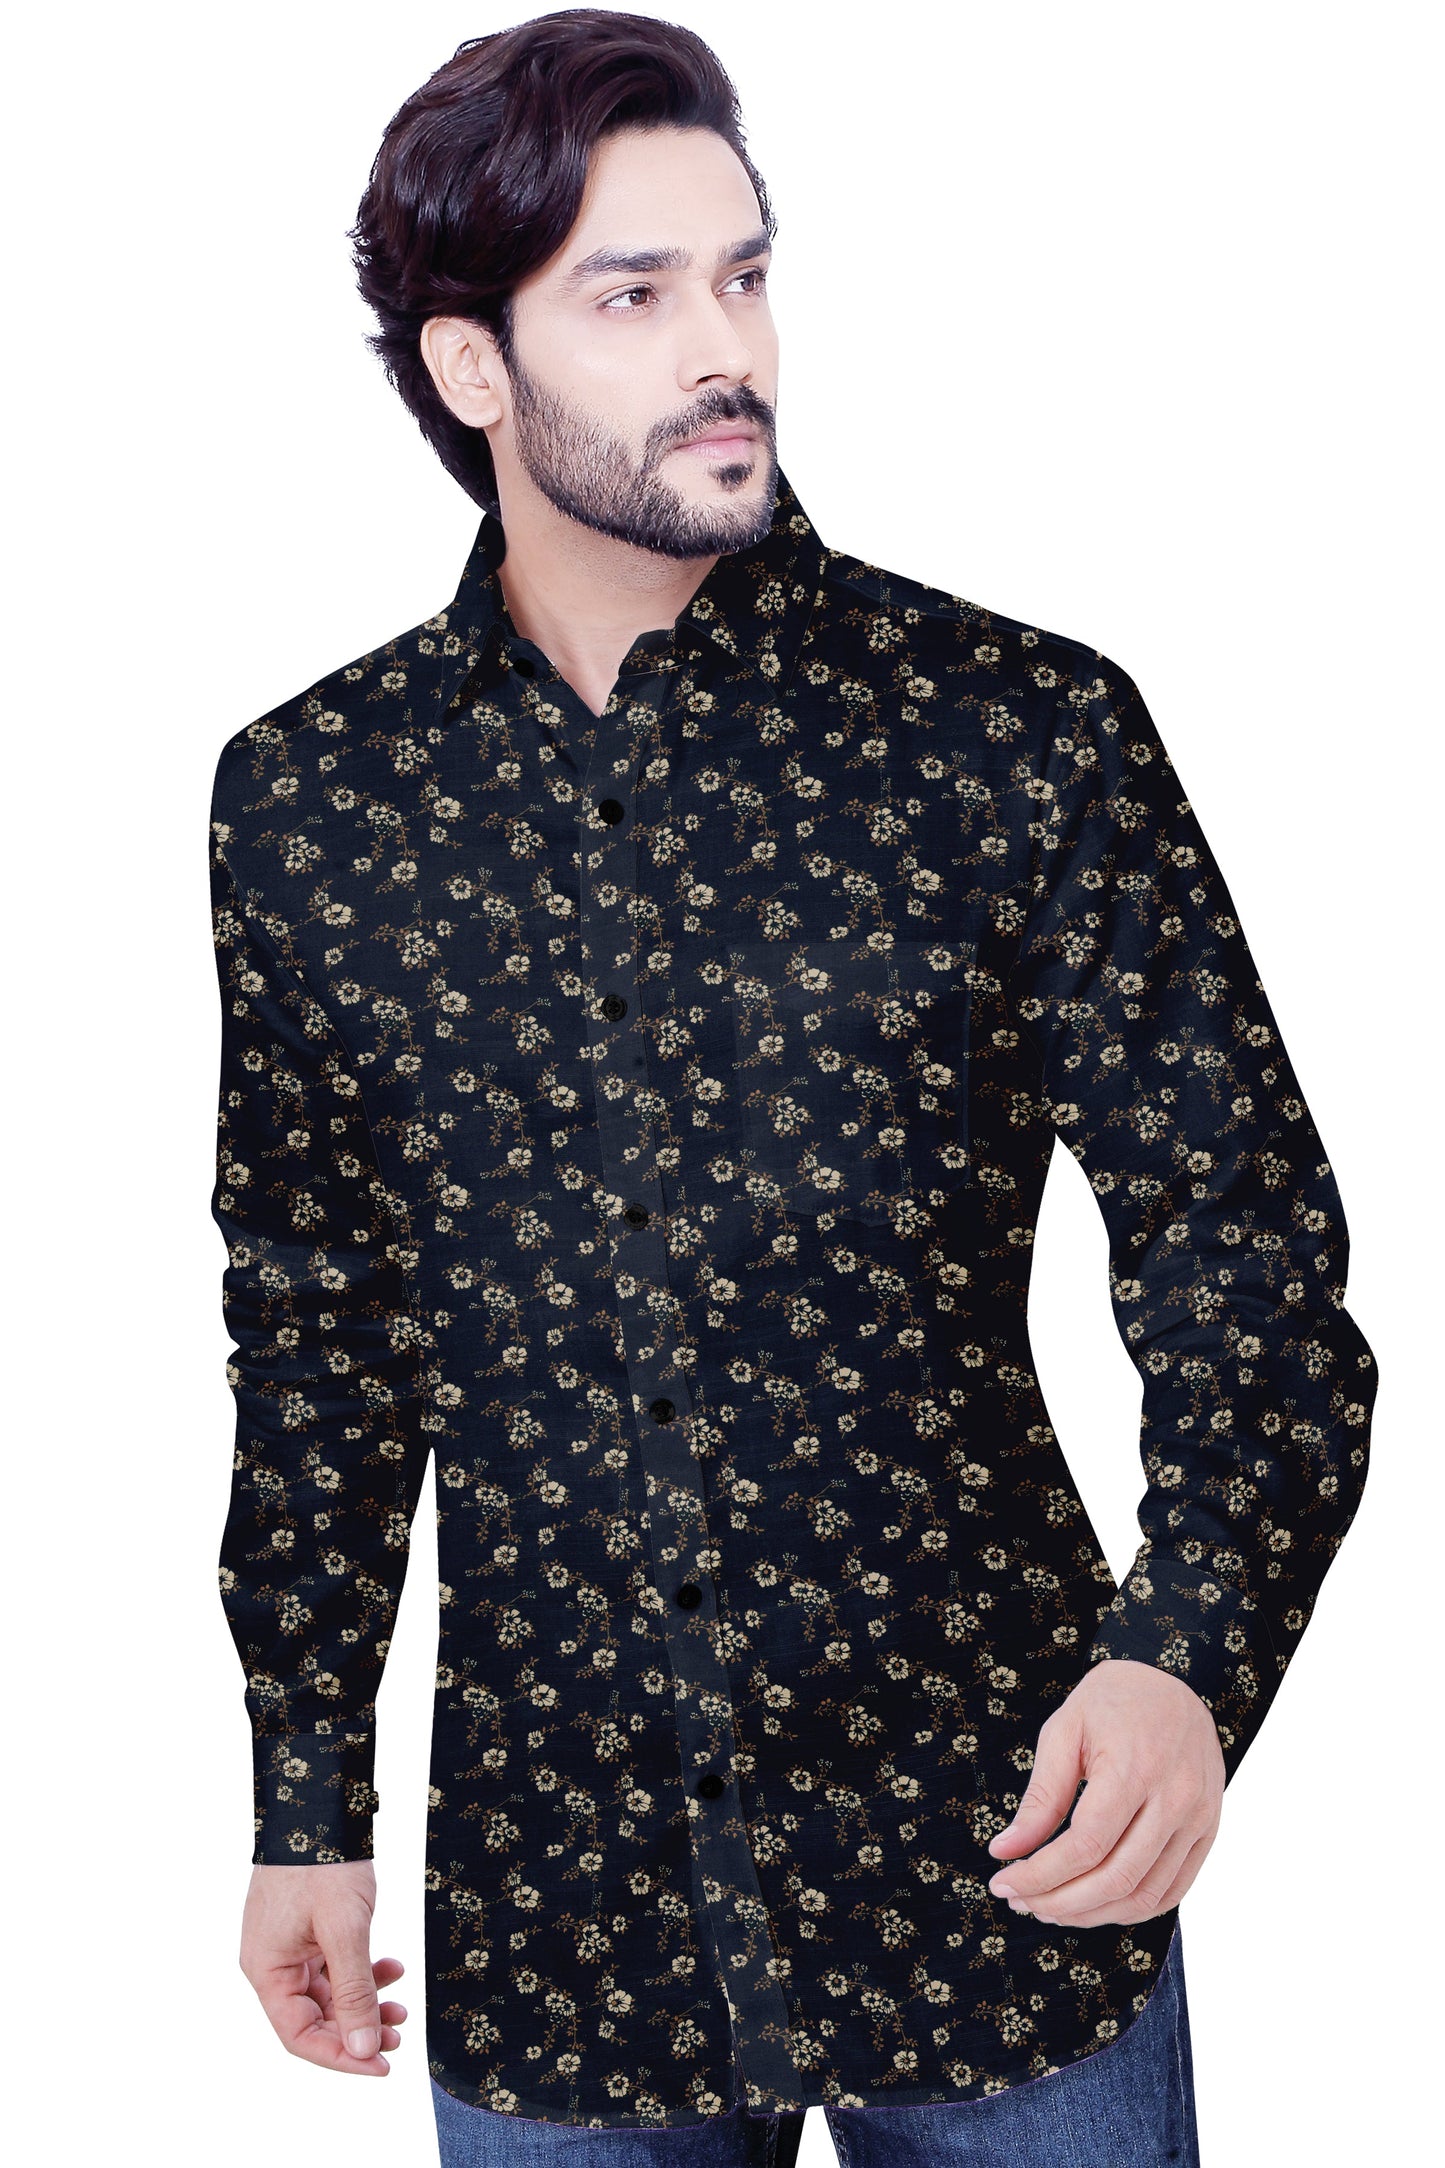 Men's Dark Black Flower Casual Shirt Full Sleeves 100% Cotton 